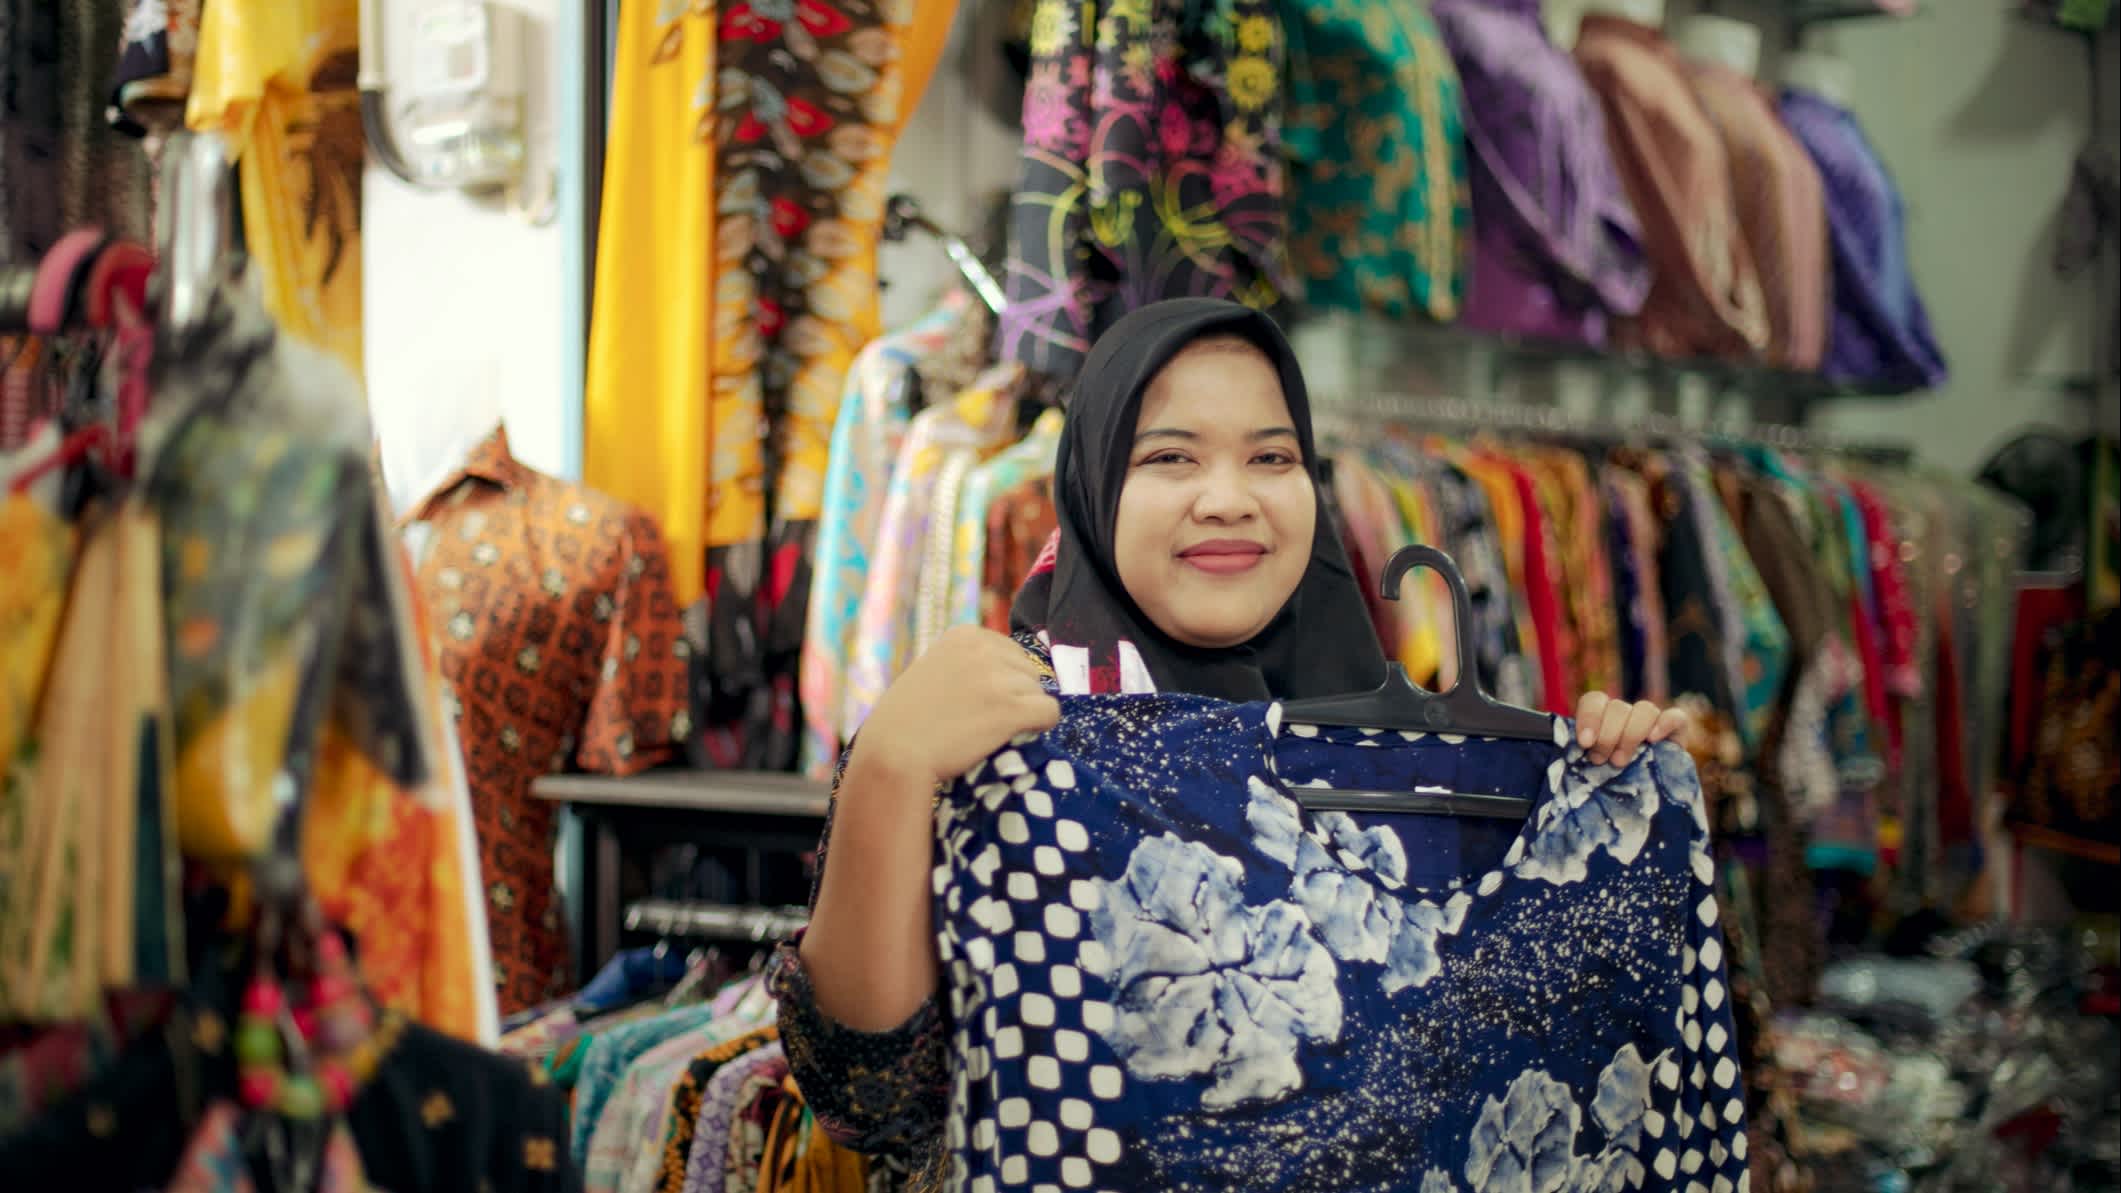 Une femme montre du tissu dans un centre commercial, Indonésie